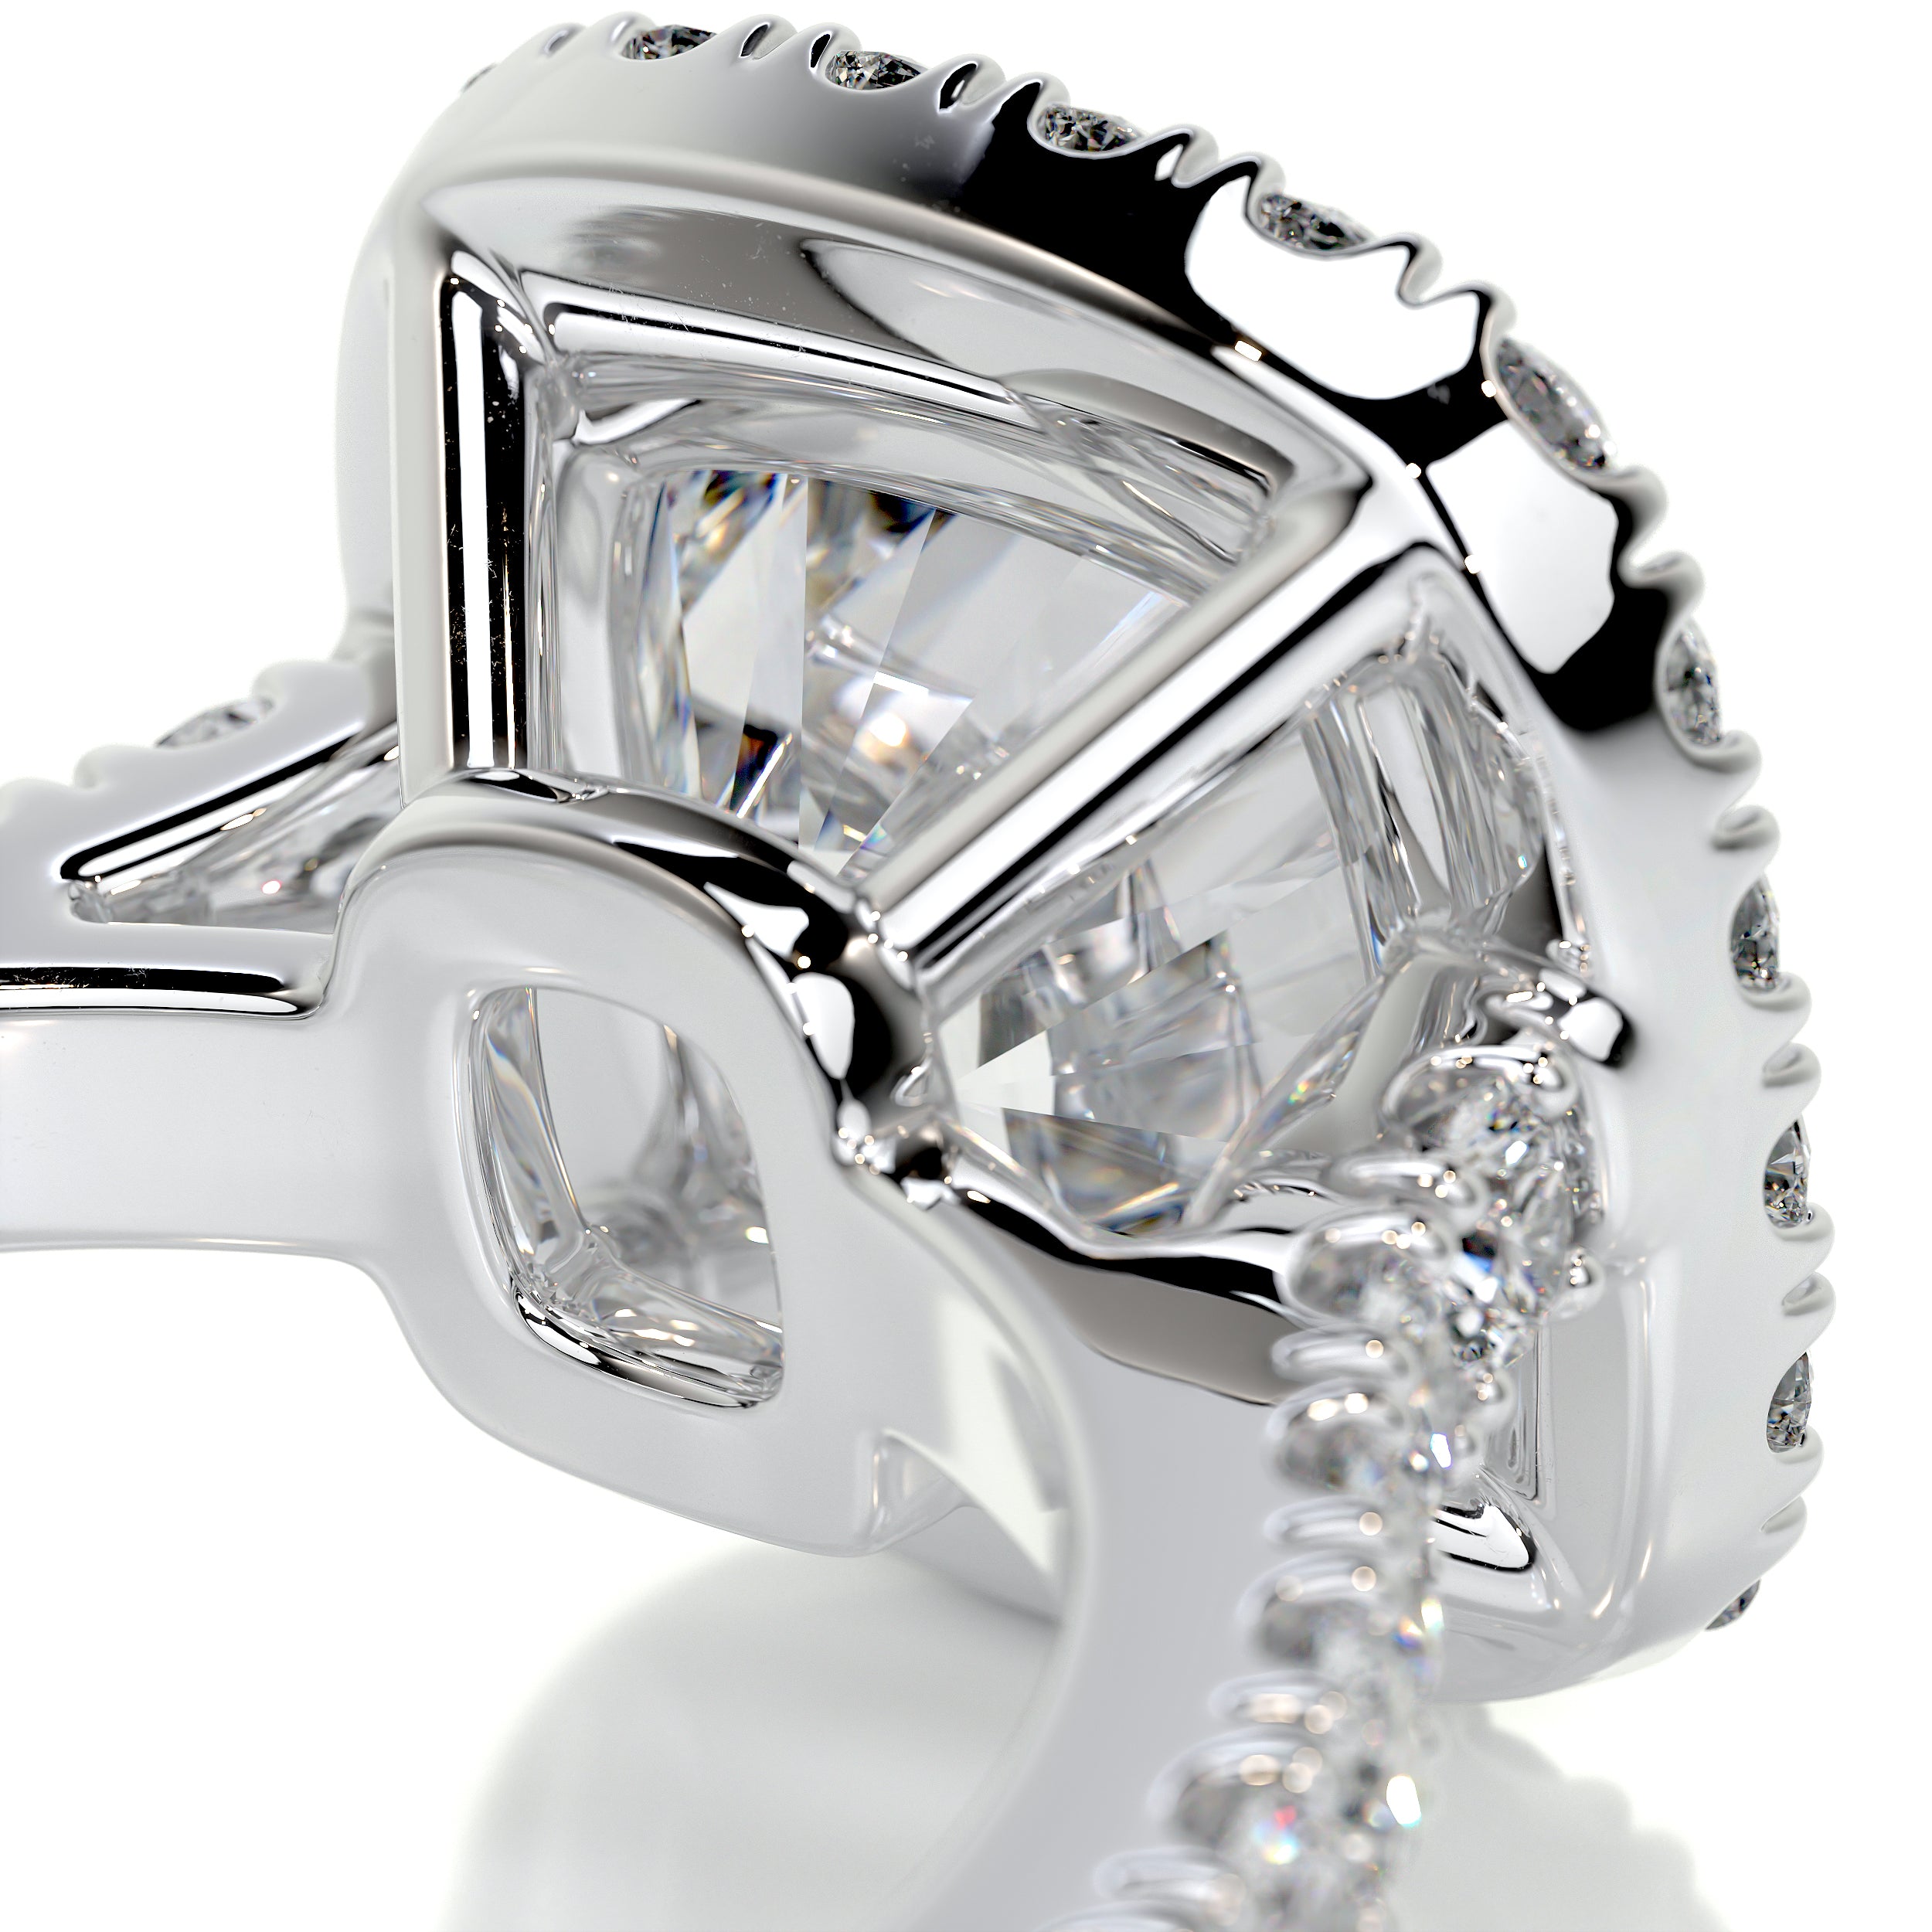 Celeste Moissanite & Diamonds Ring -14K White Gold